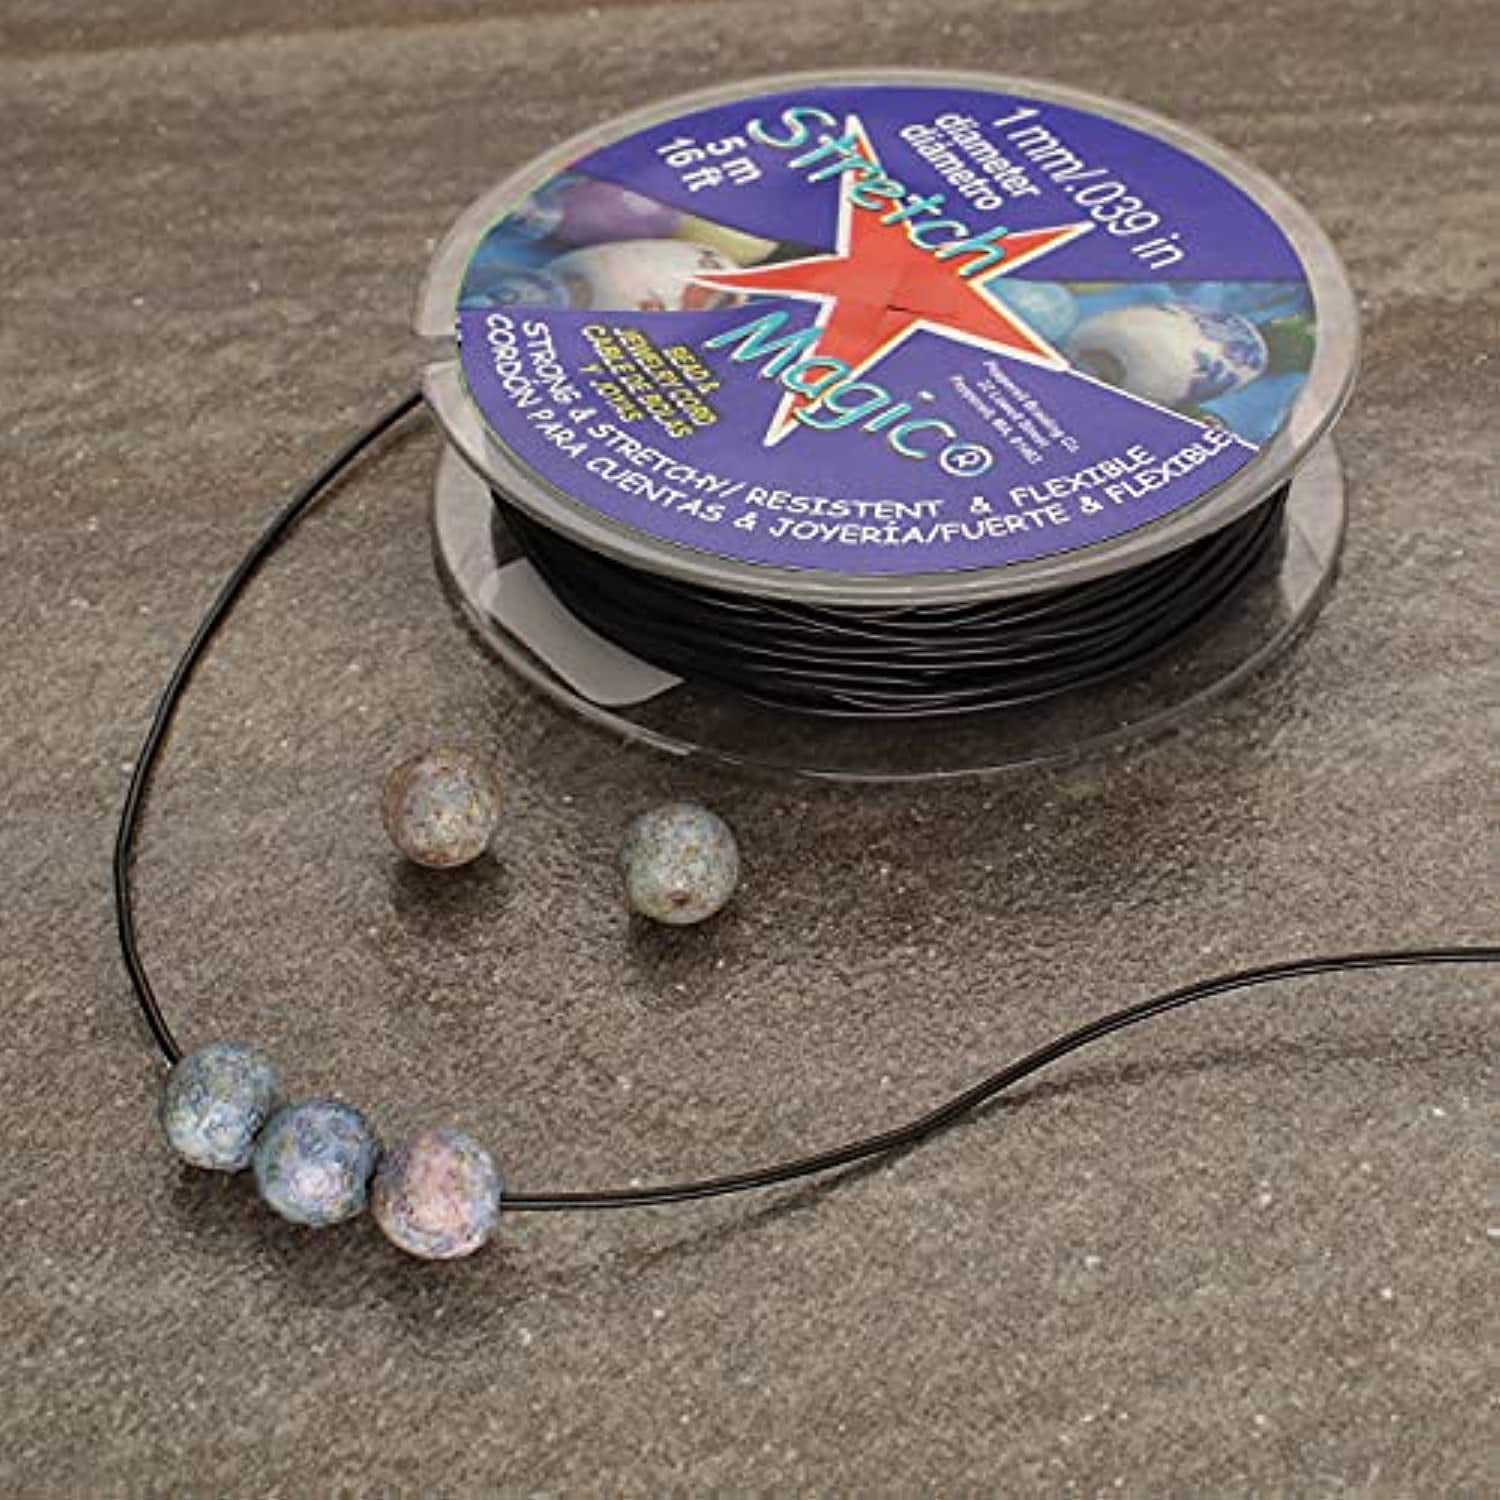 Stretch Magic Bead & Jewelry Cord 1mmX5m-Pearl